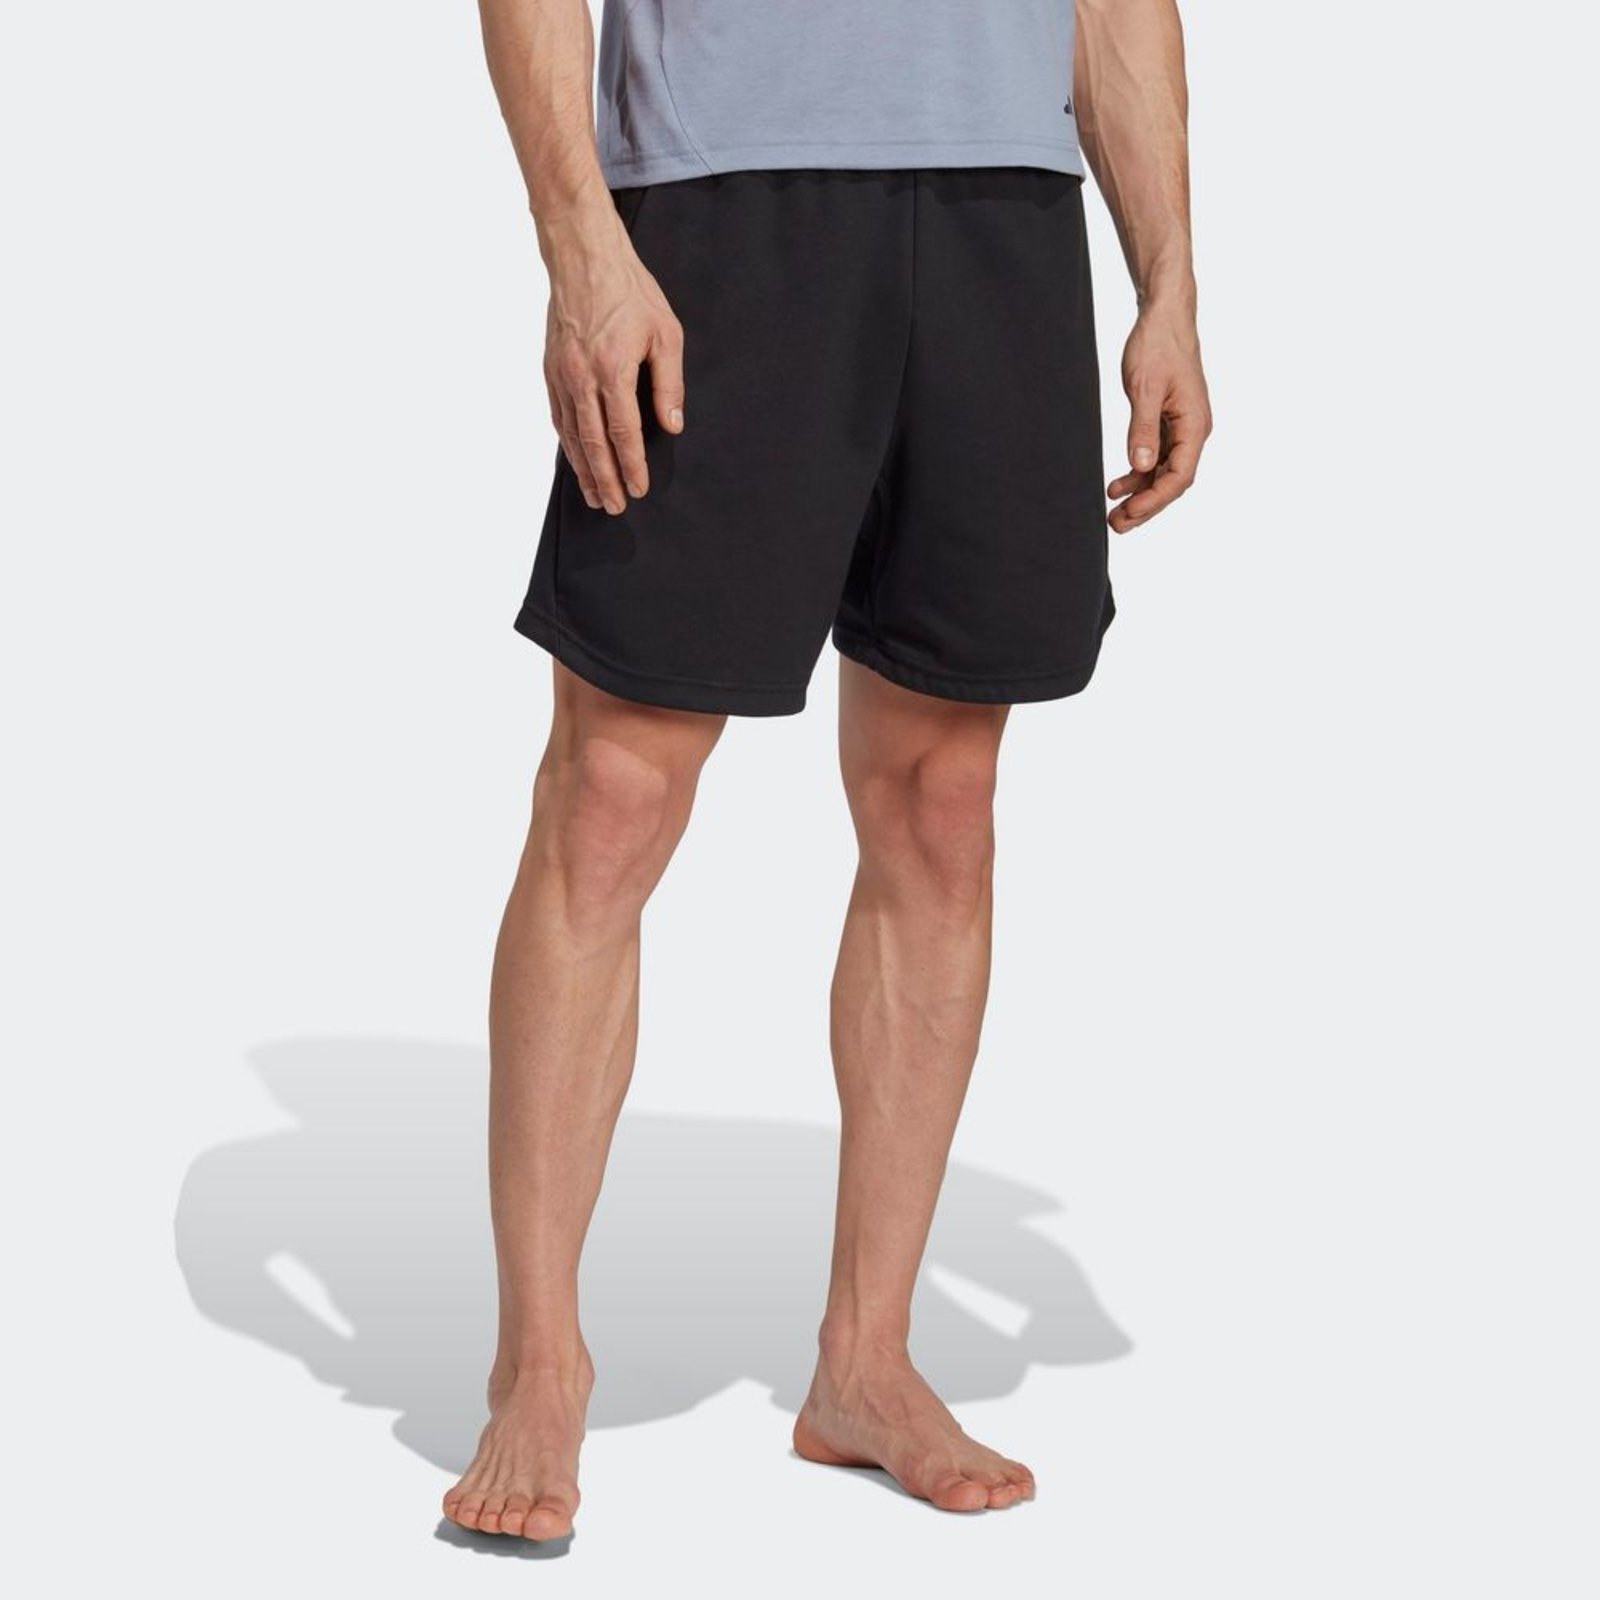 Adidas Shorts Yoga Base - Compre Agora